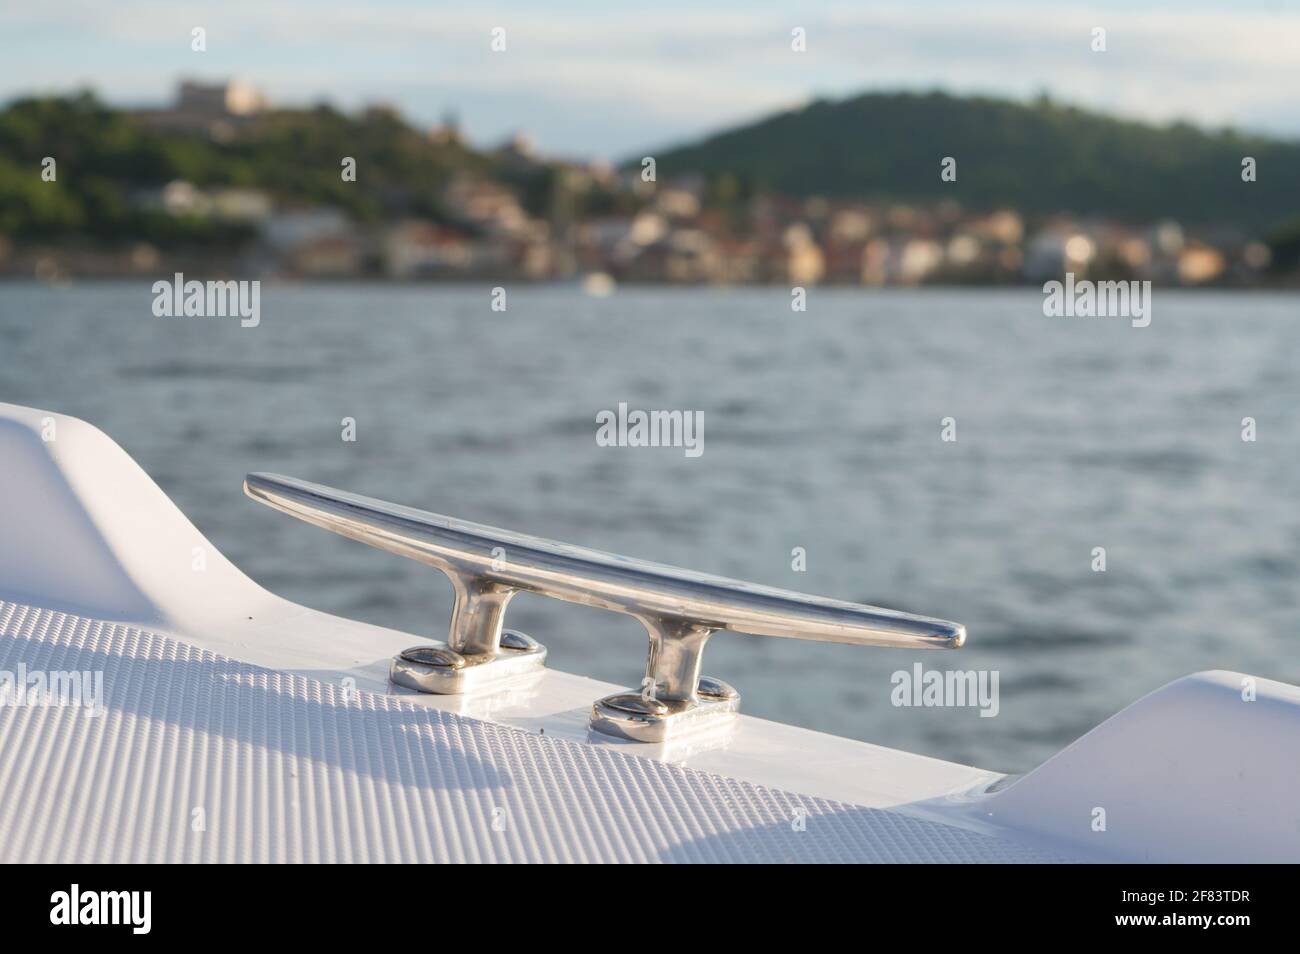 Tacchetto per ormeggio in acciaio sulla piccola imbarcazione da diporto in plastica, attrezzature nautiche, Adriatico se, Croazia Foto Stock